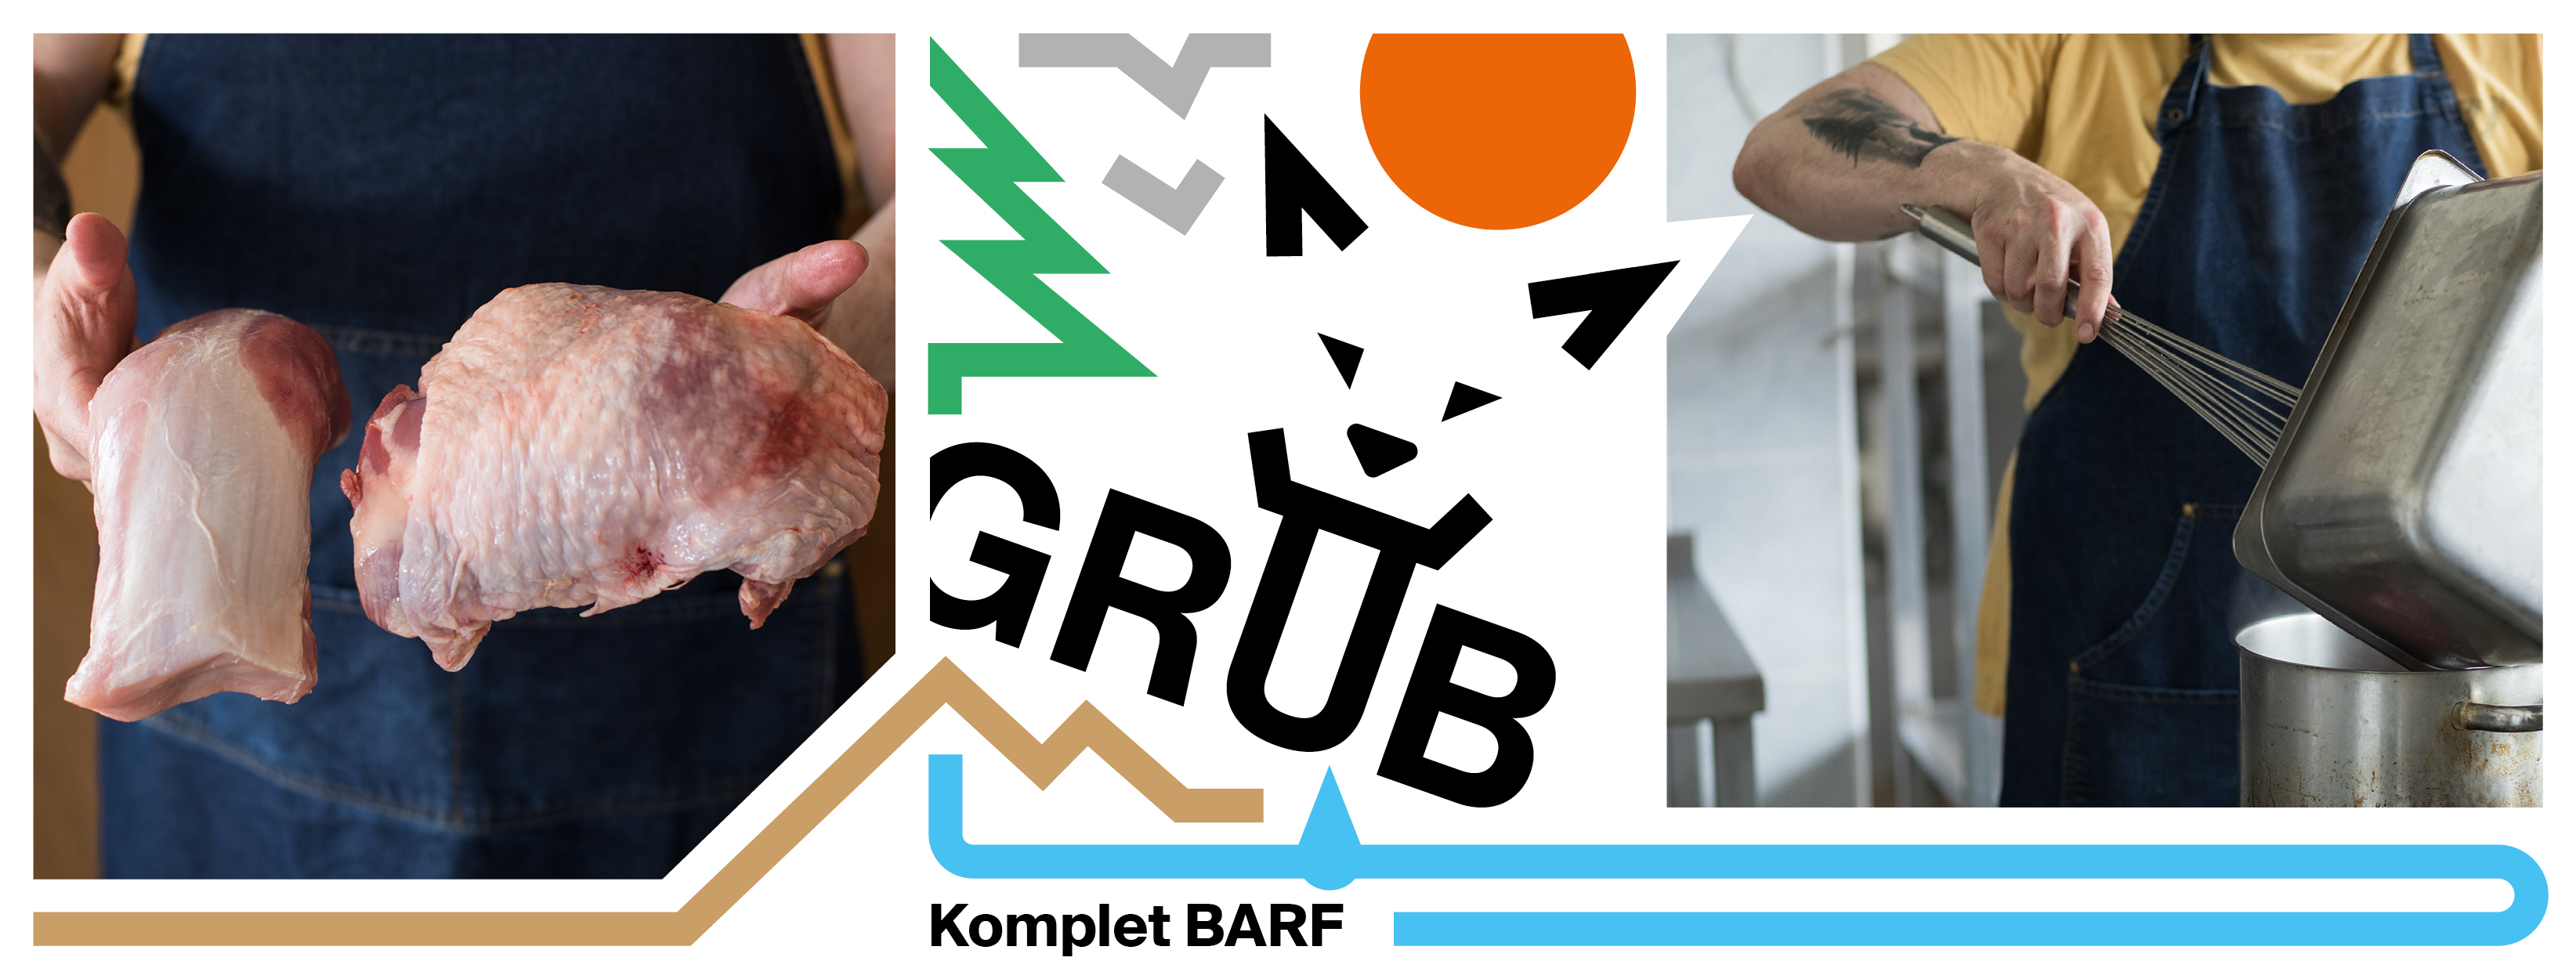 Grub-Barf2